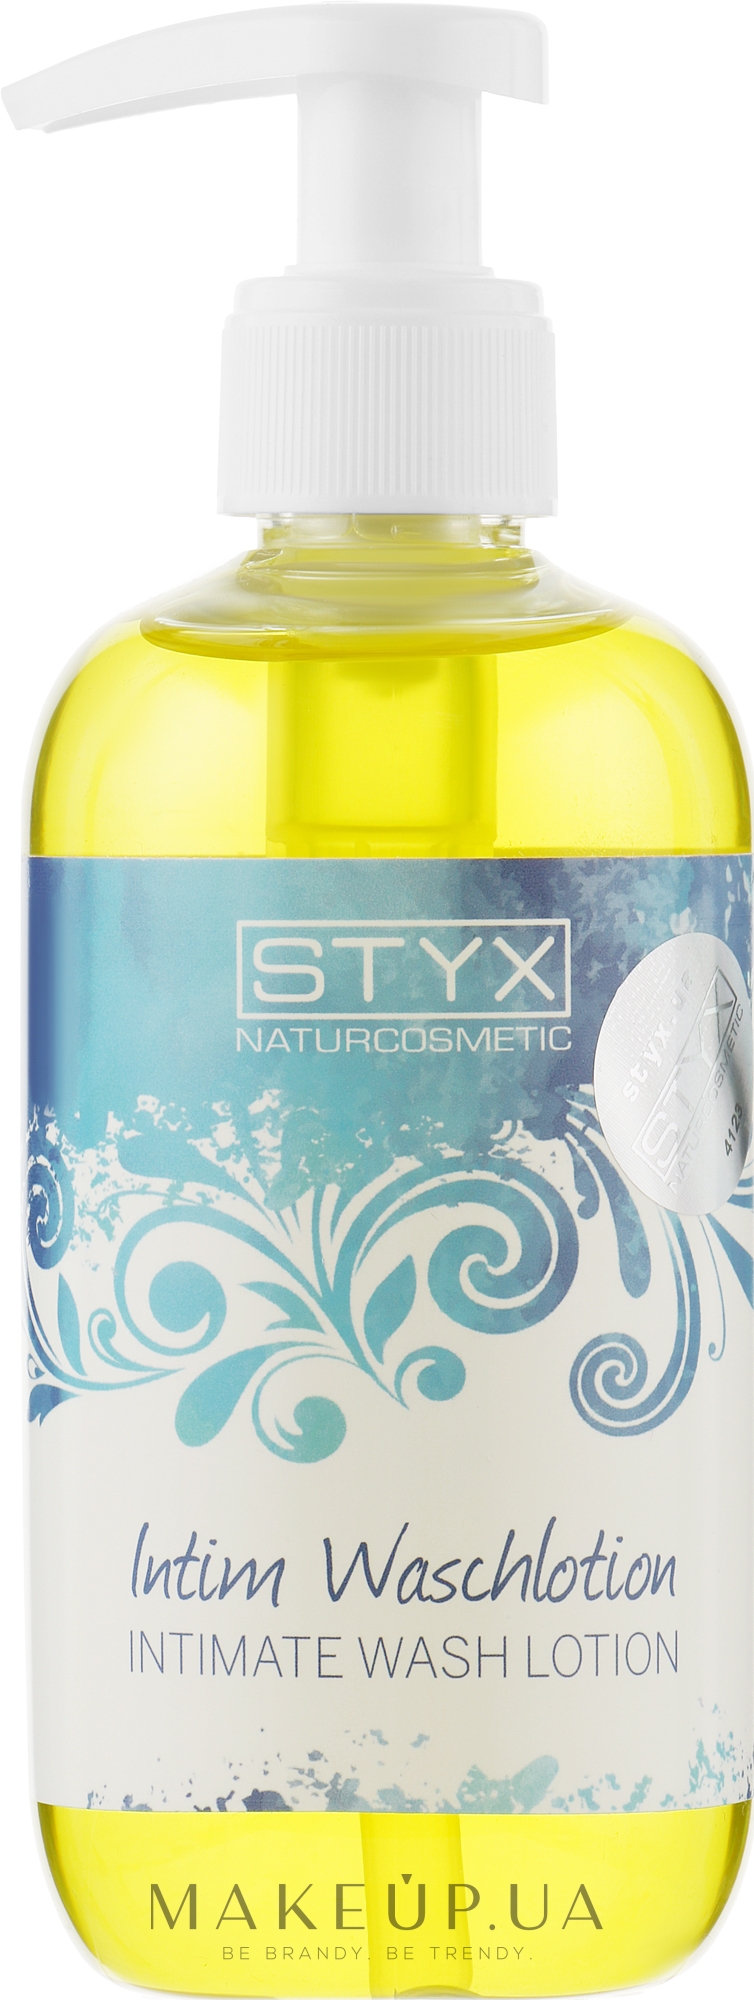 Інтим-гель для душу - Styx Naturcosmetic Intimate Wash Lotion — фото 250ml